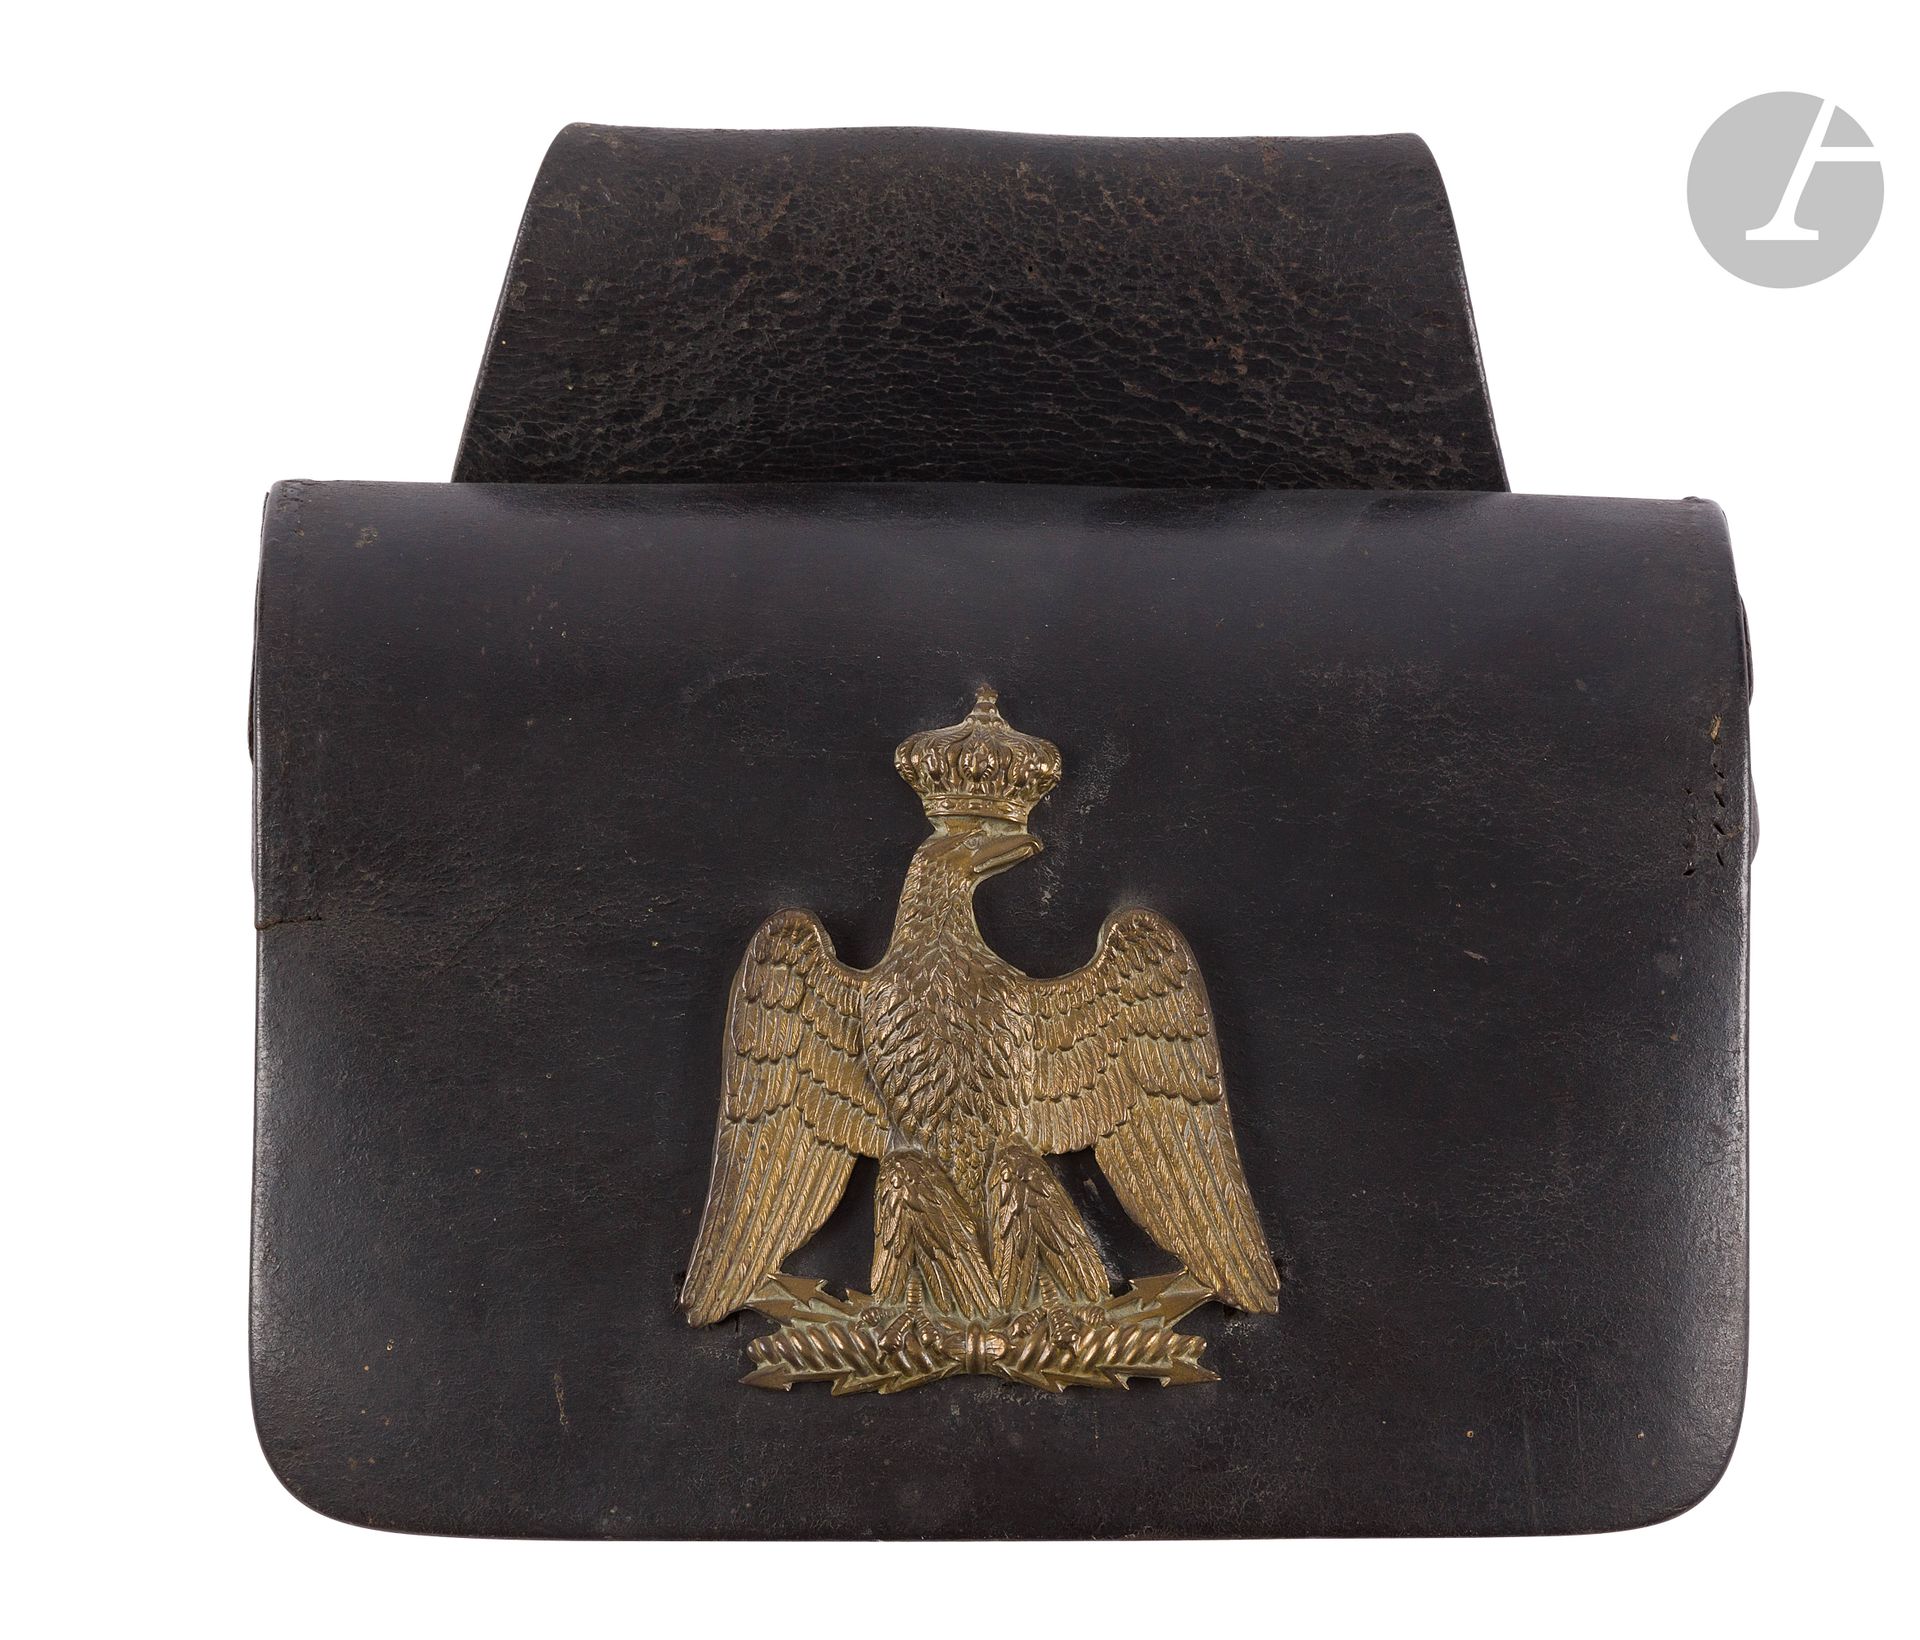 Null 帝国卫队步兵冬眠箱，黑色皮革。 
黄铜冠鹰的图案。
A.B.E. 第二帝国时期。